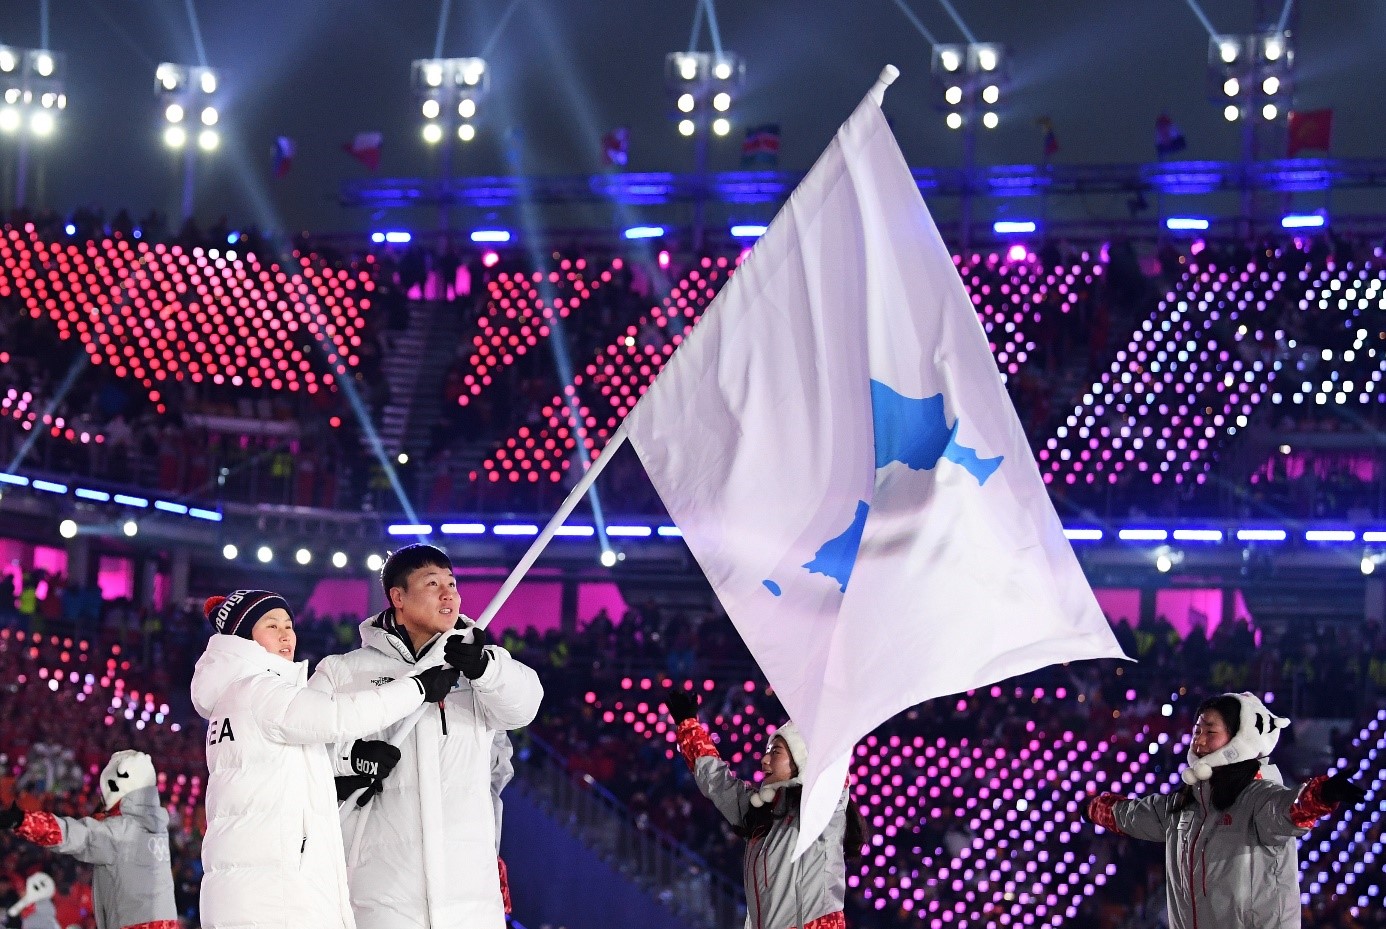 sports-ceremonie-douverture-des-jeux-olympiques-de-pyeongchang-2018-/9-2018021091240135-jpg.jpeg